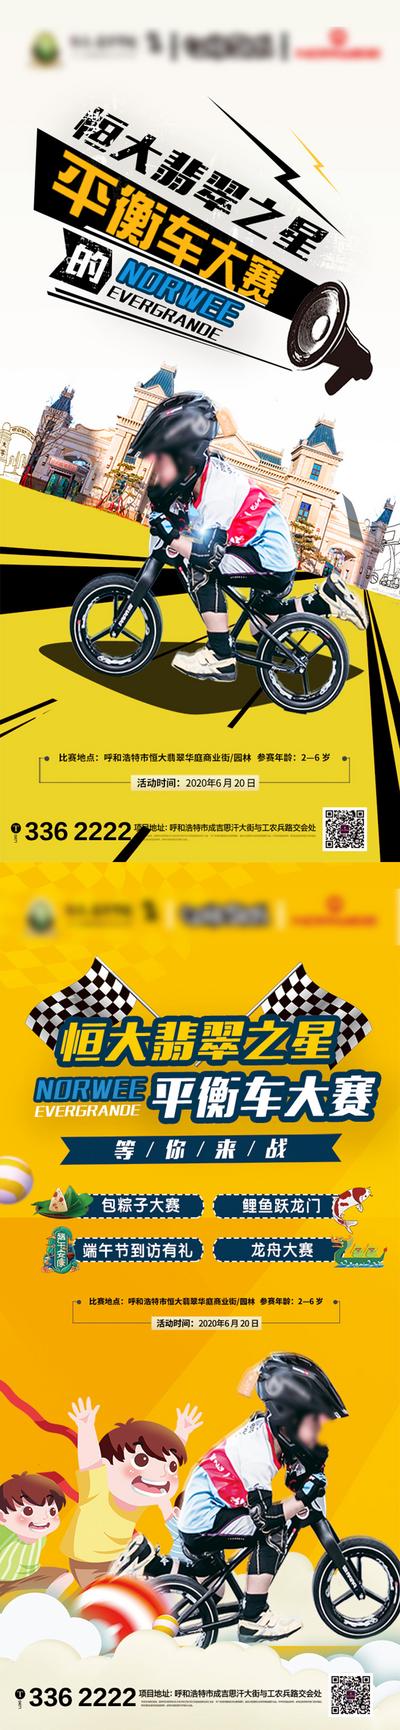 南门网 房地产平衡车大赛活动移动端海报